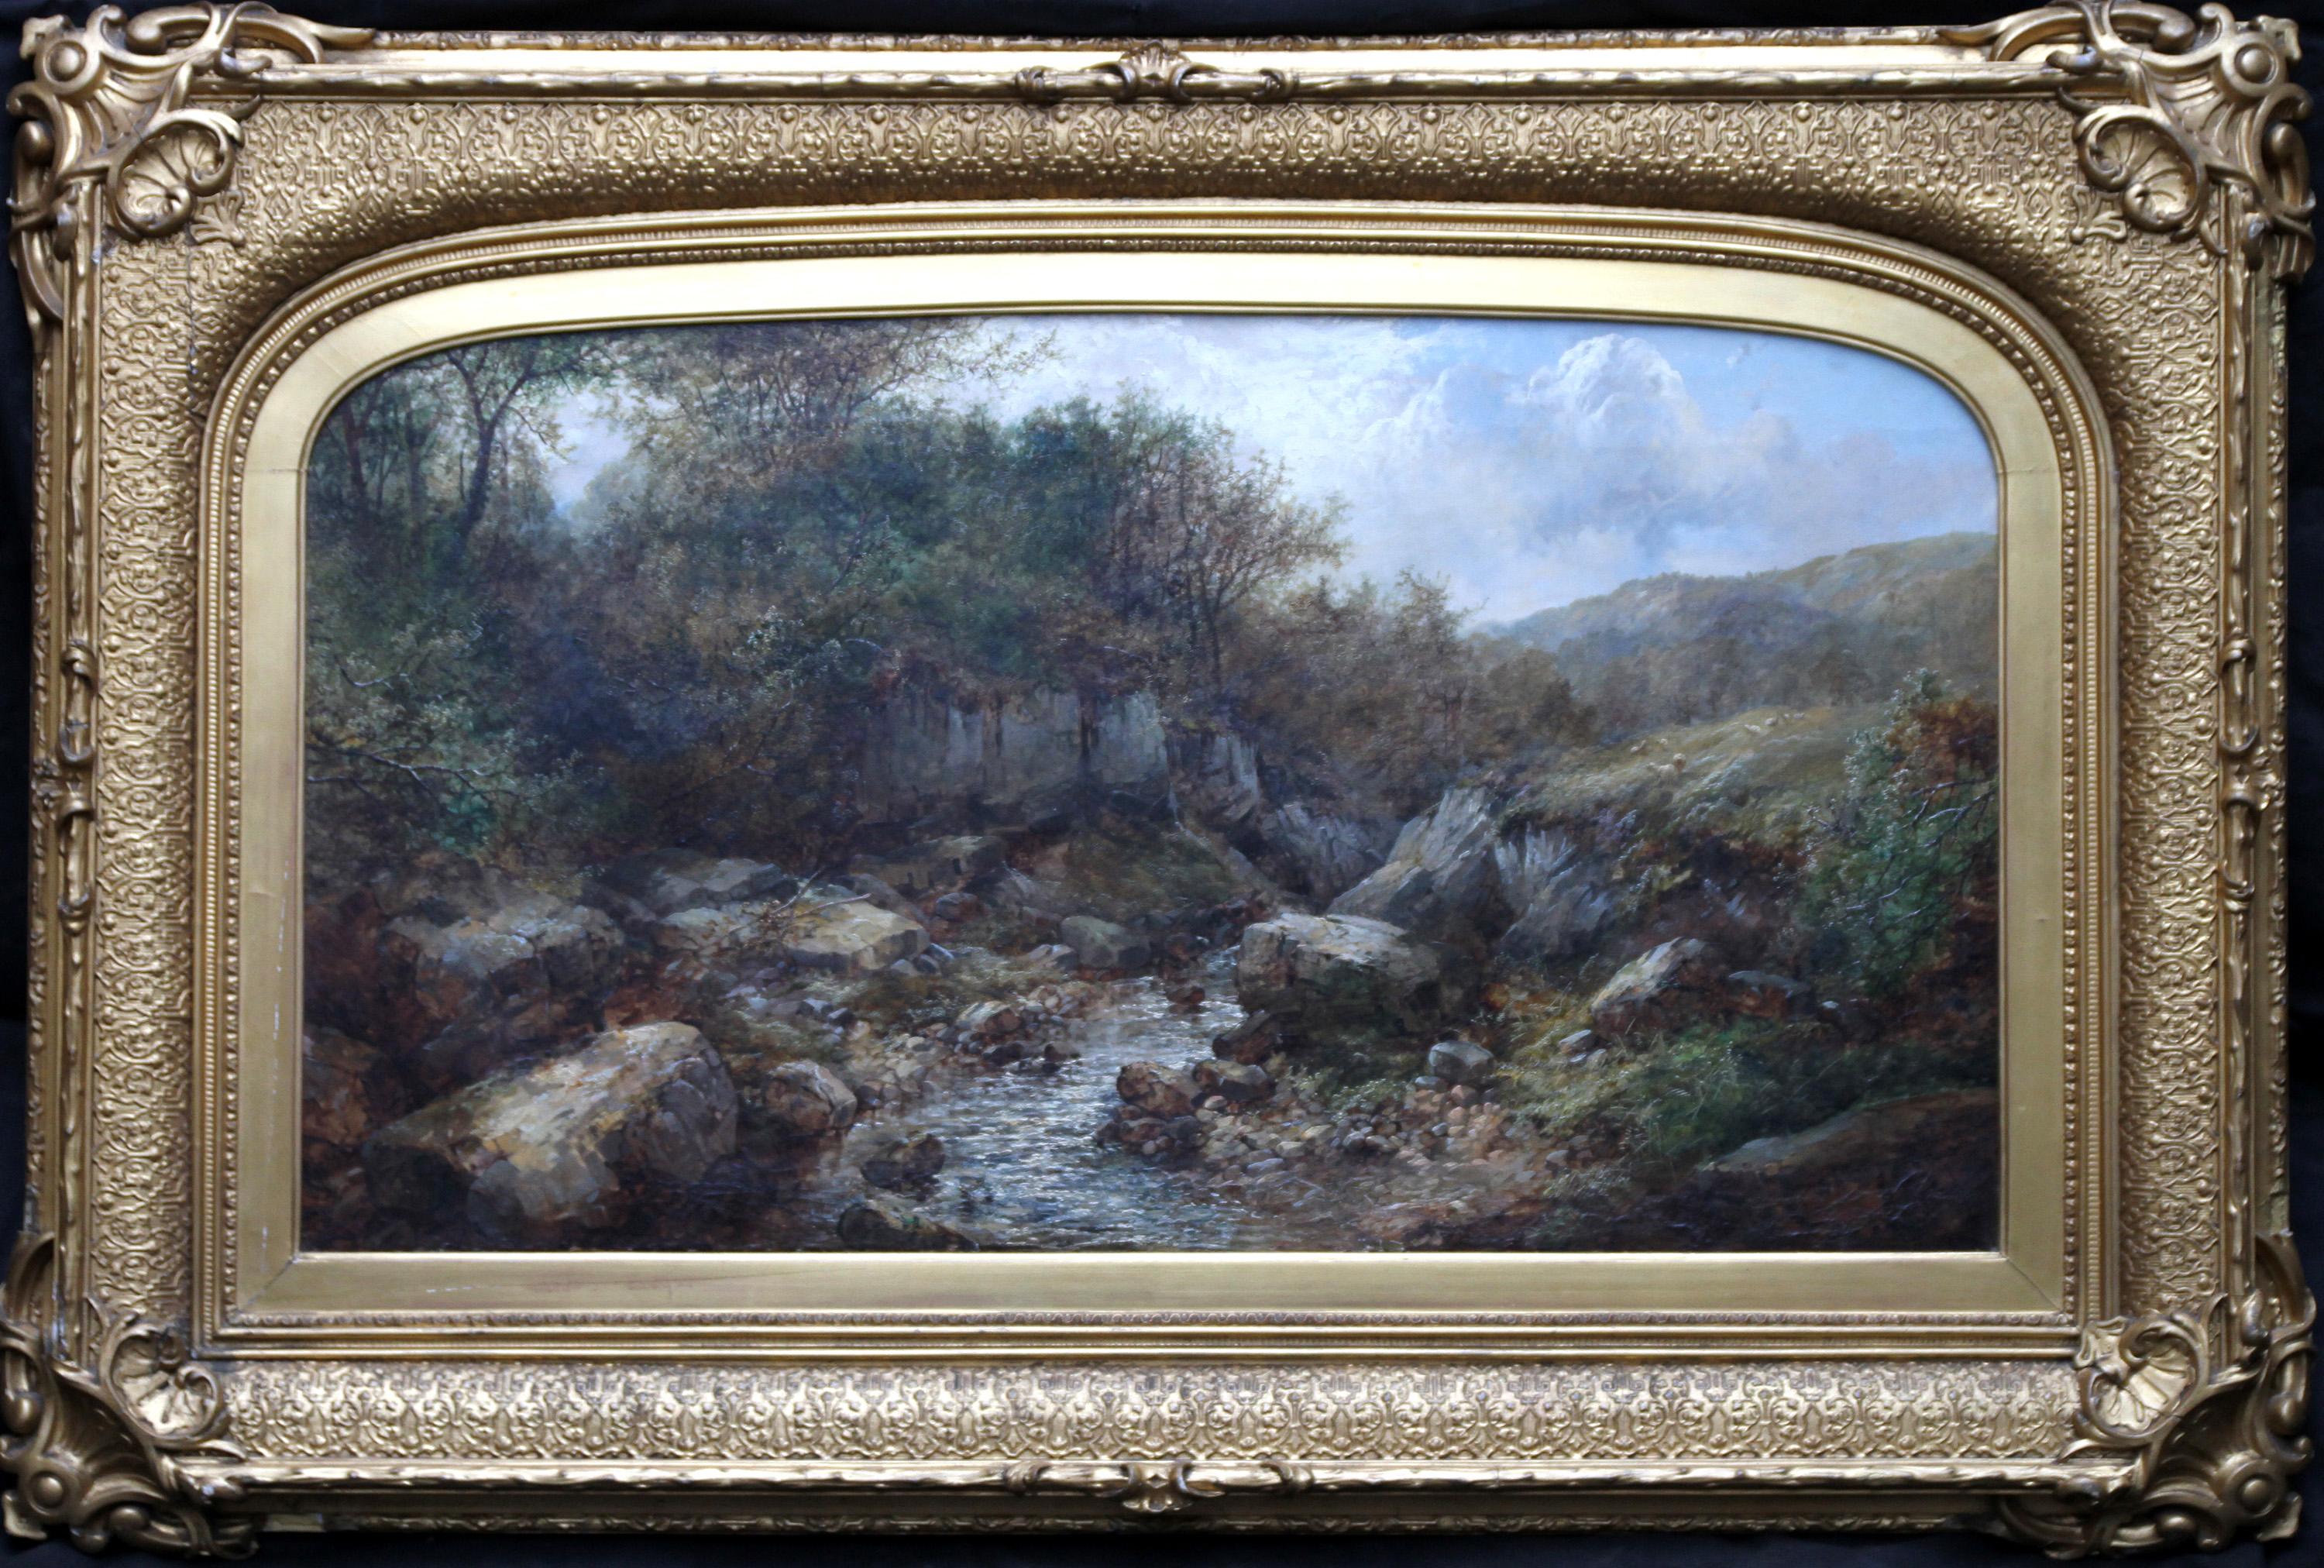 River Landscape - British art 19th century landscape oil painting 5